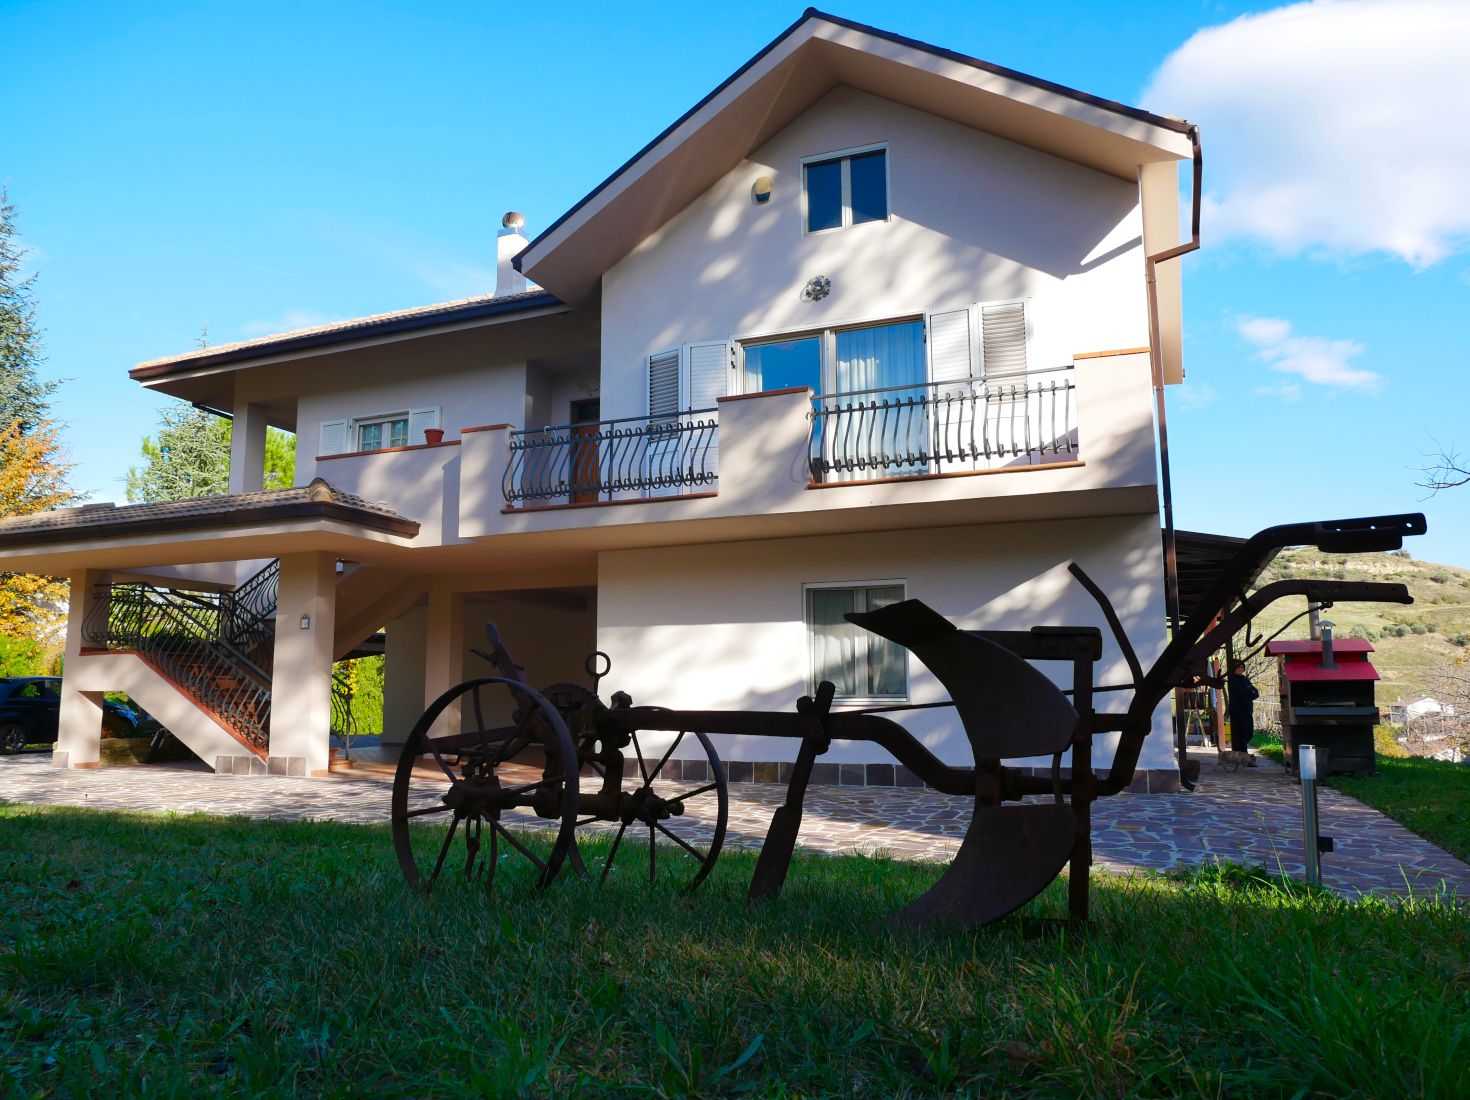 A vendre villa in zone tranquille Alanno Abruzzo